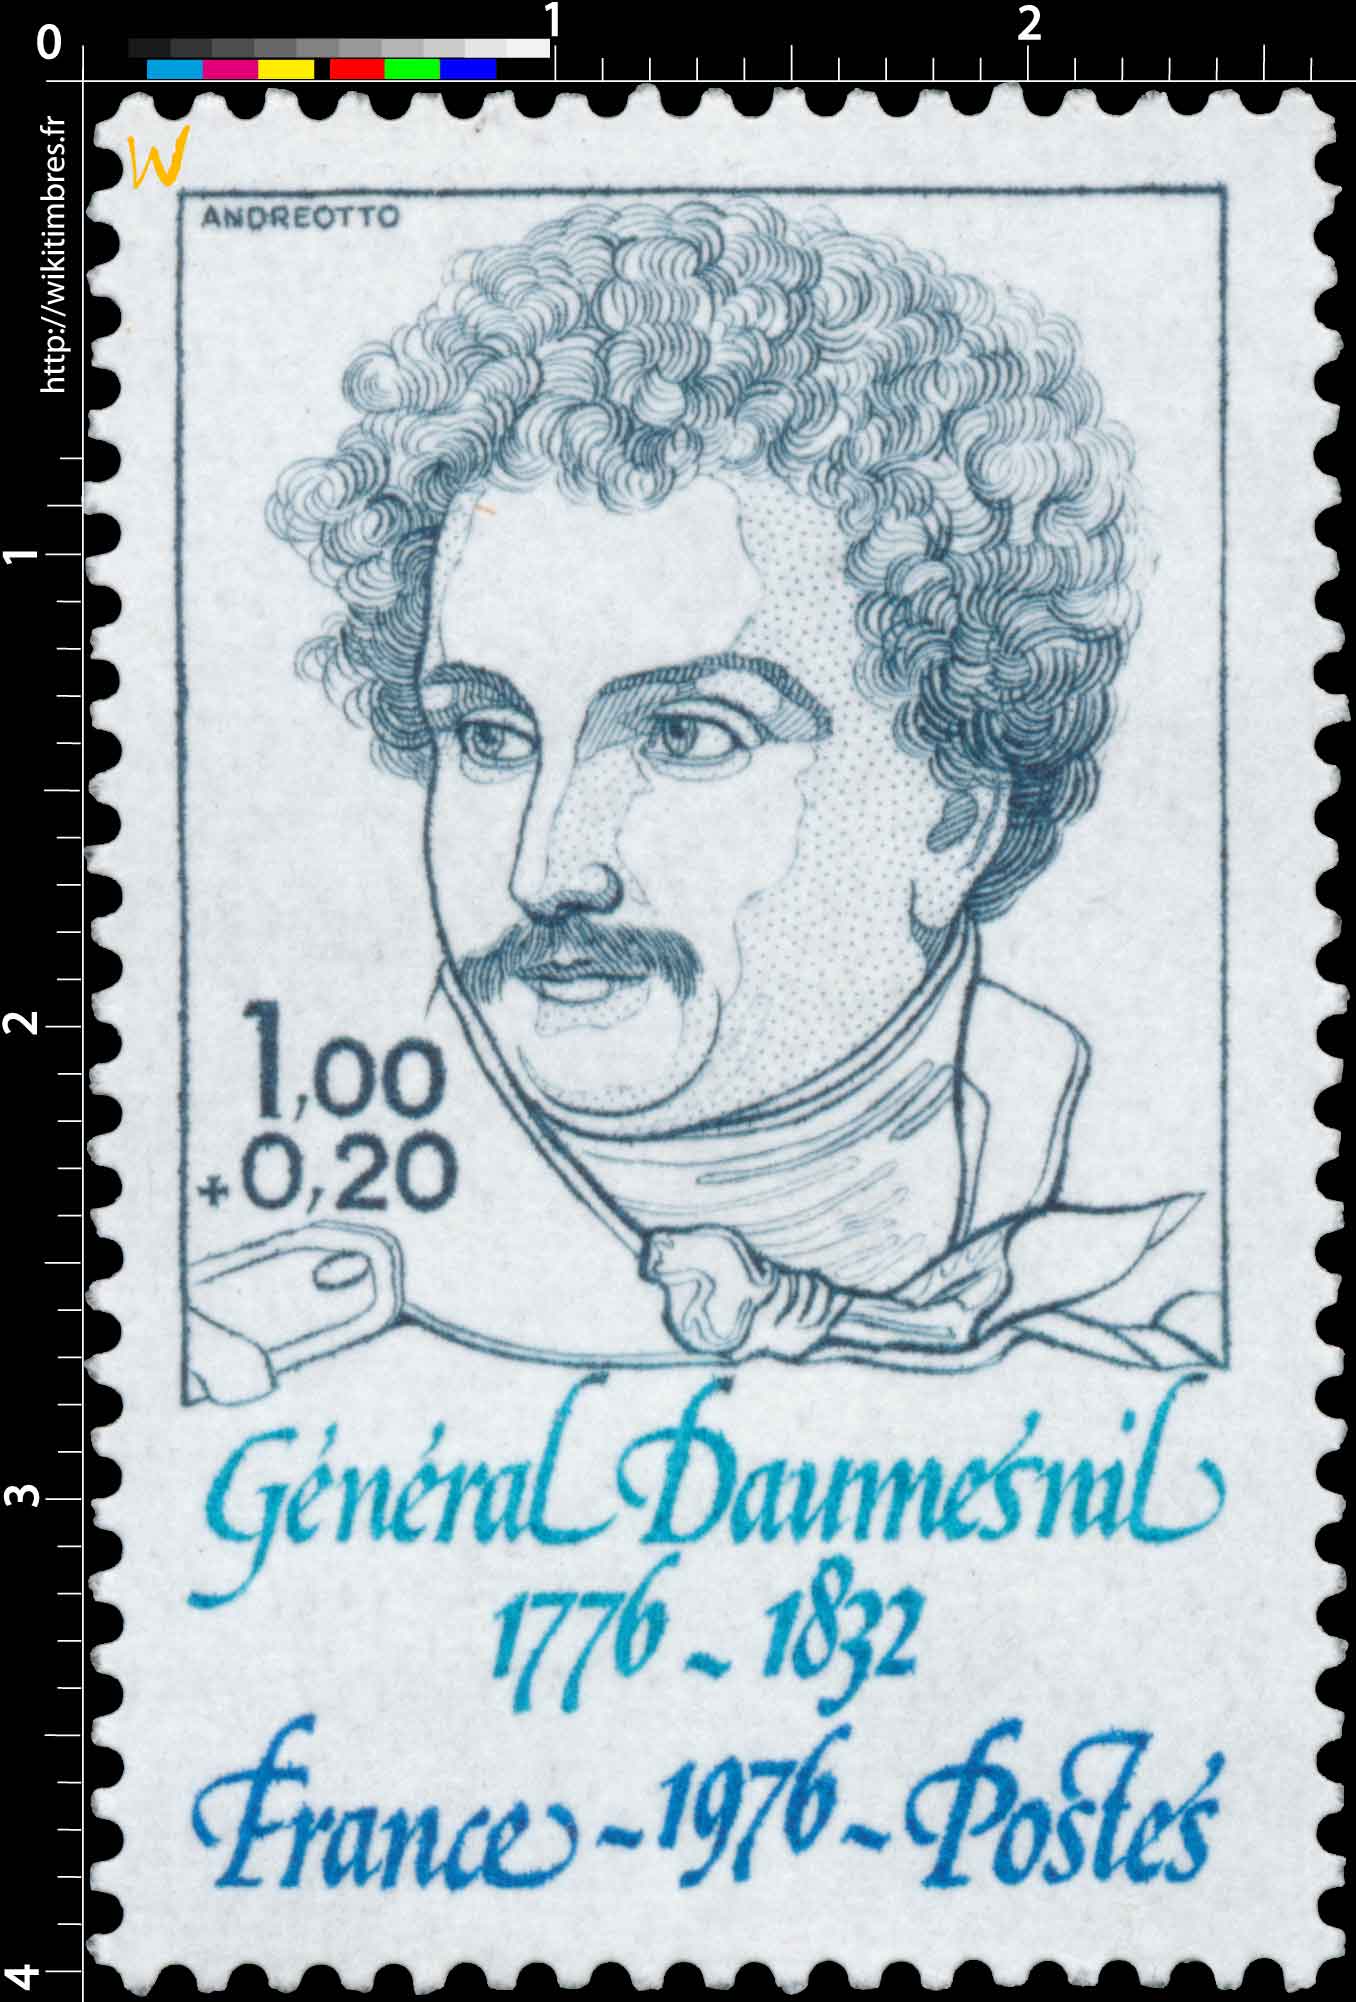 1976 Général Daumesnil 1776-1832